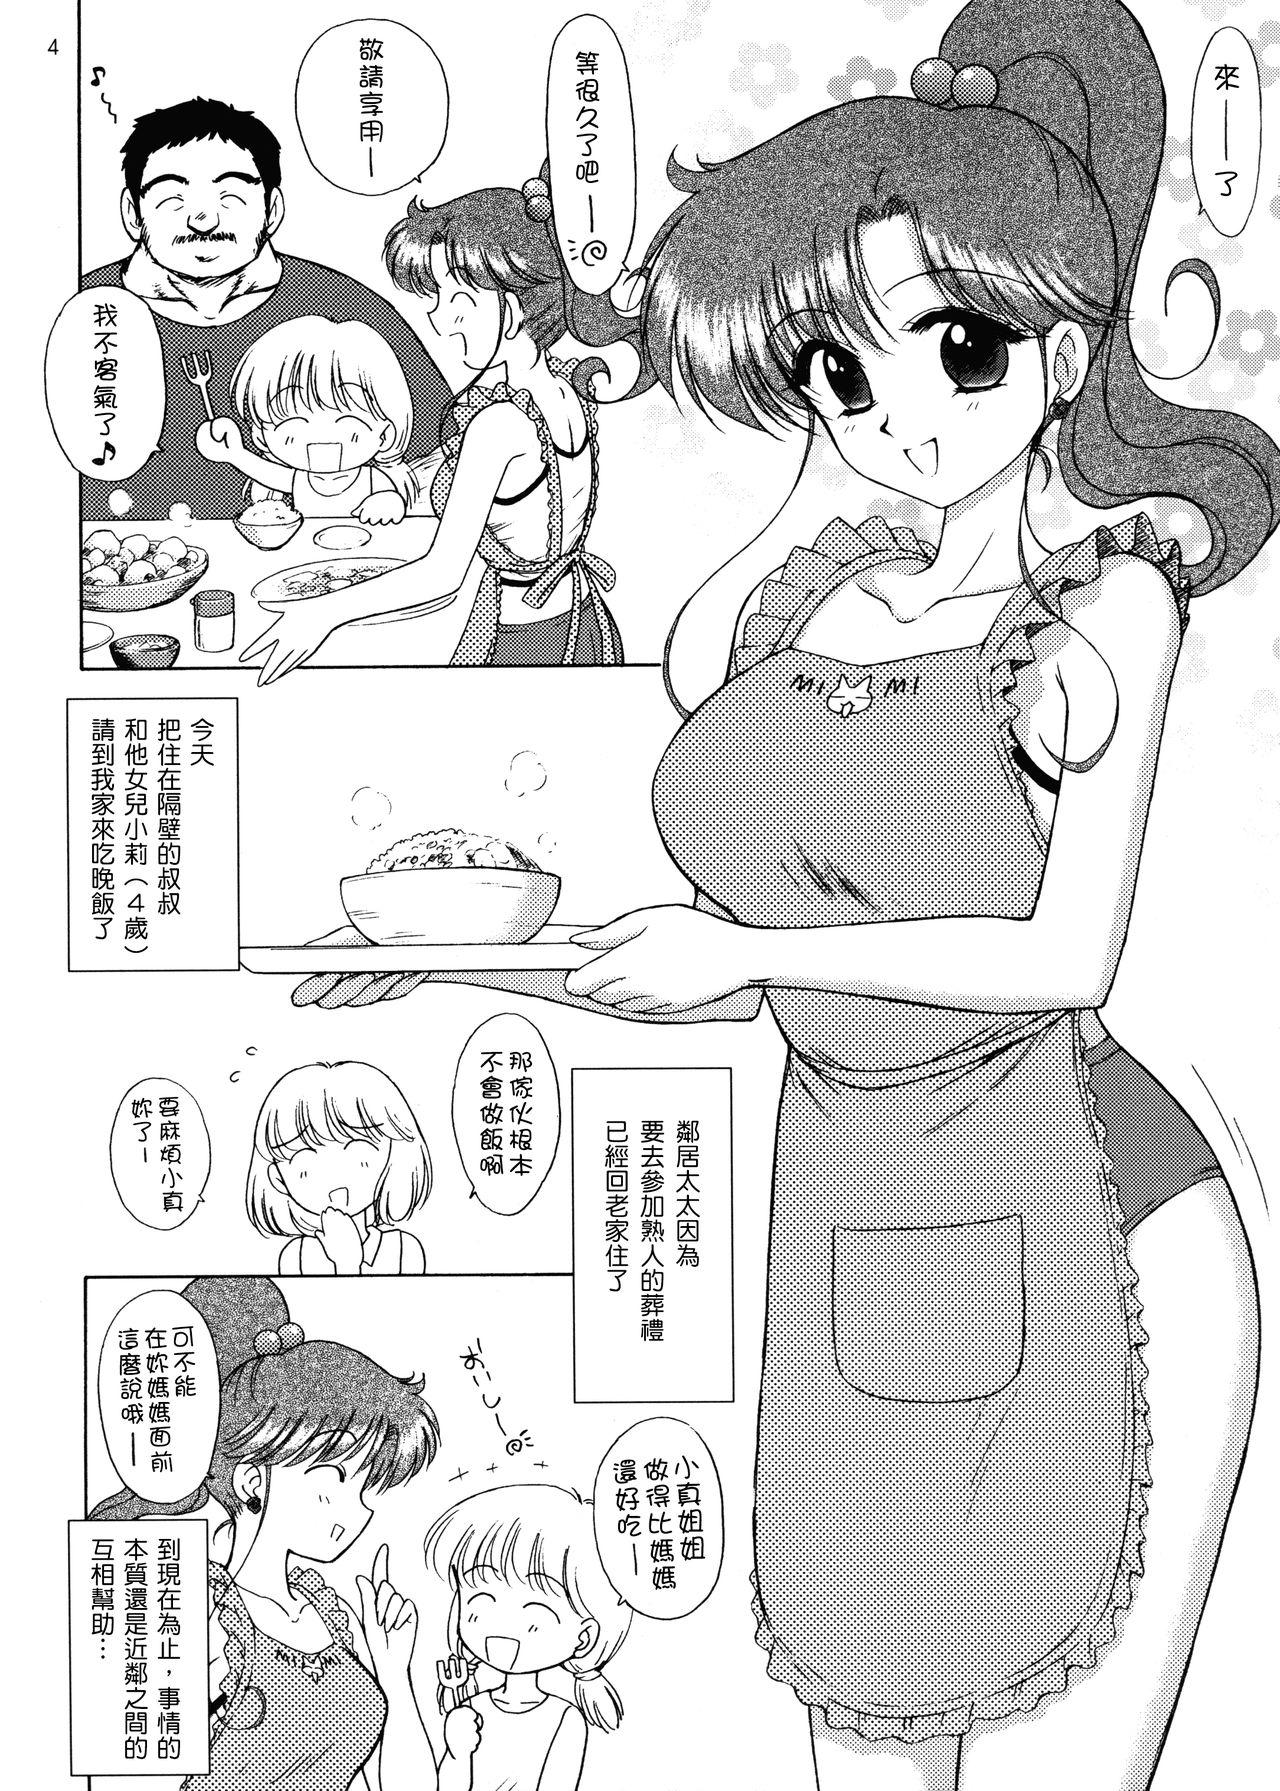 Chaturbate IN A SILENT WAY - Sailor moon | bishoujo senshi sailor moon Ftv Girls - Page 4